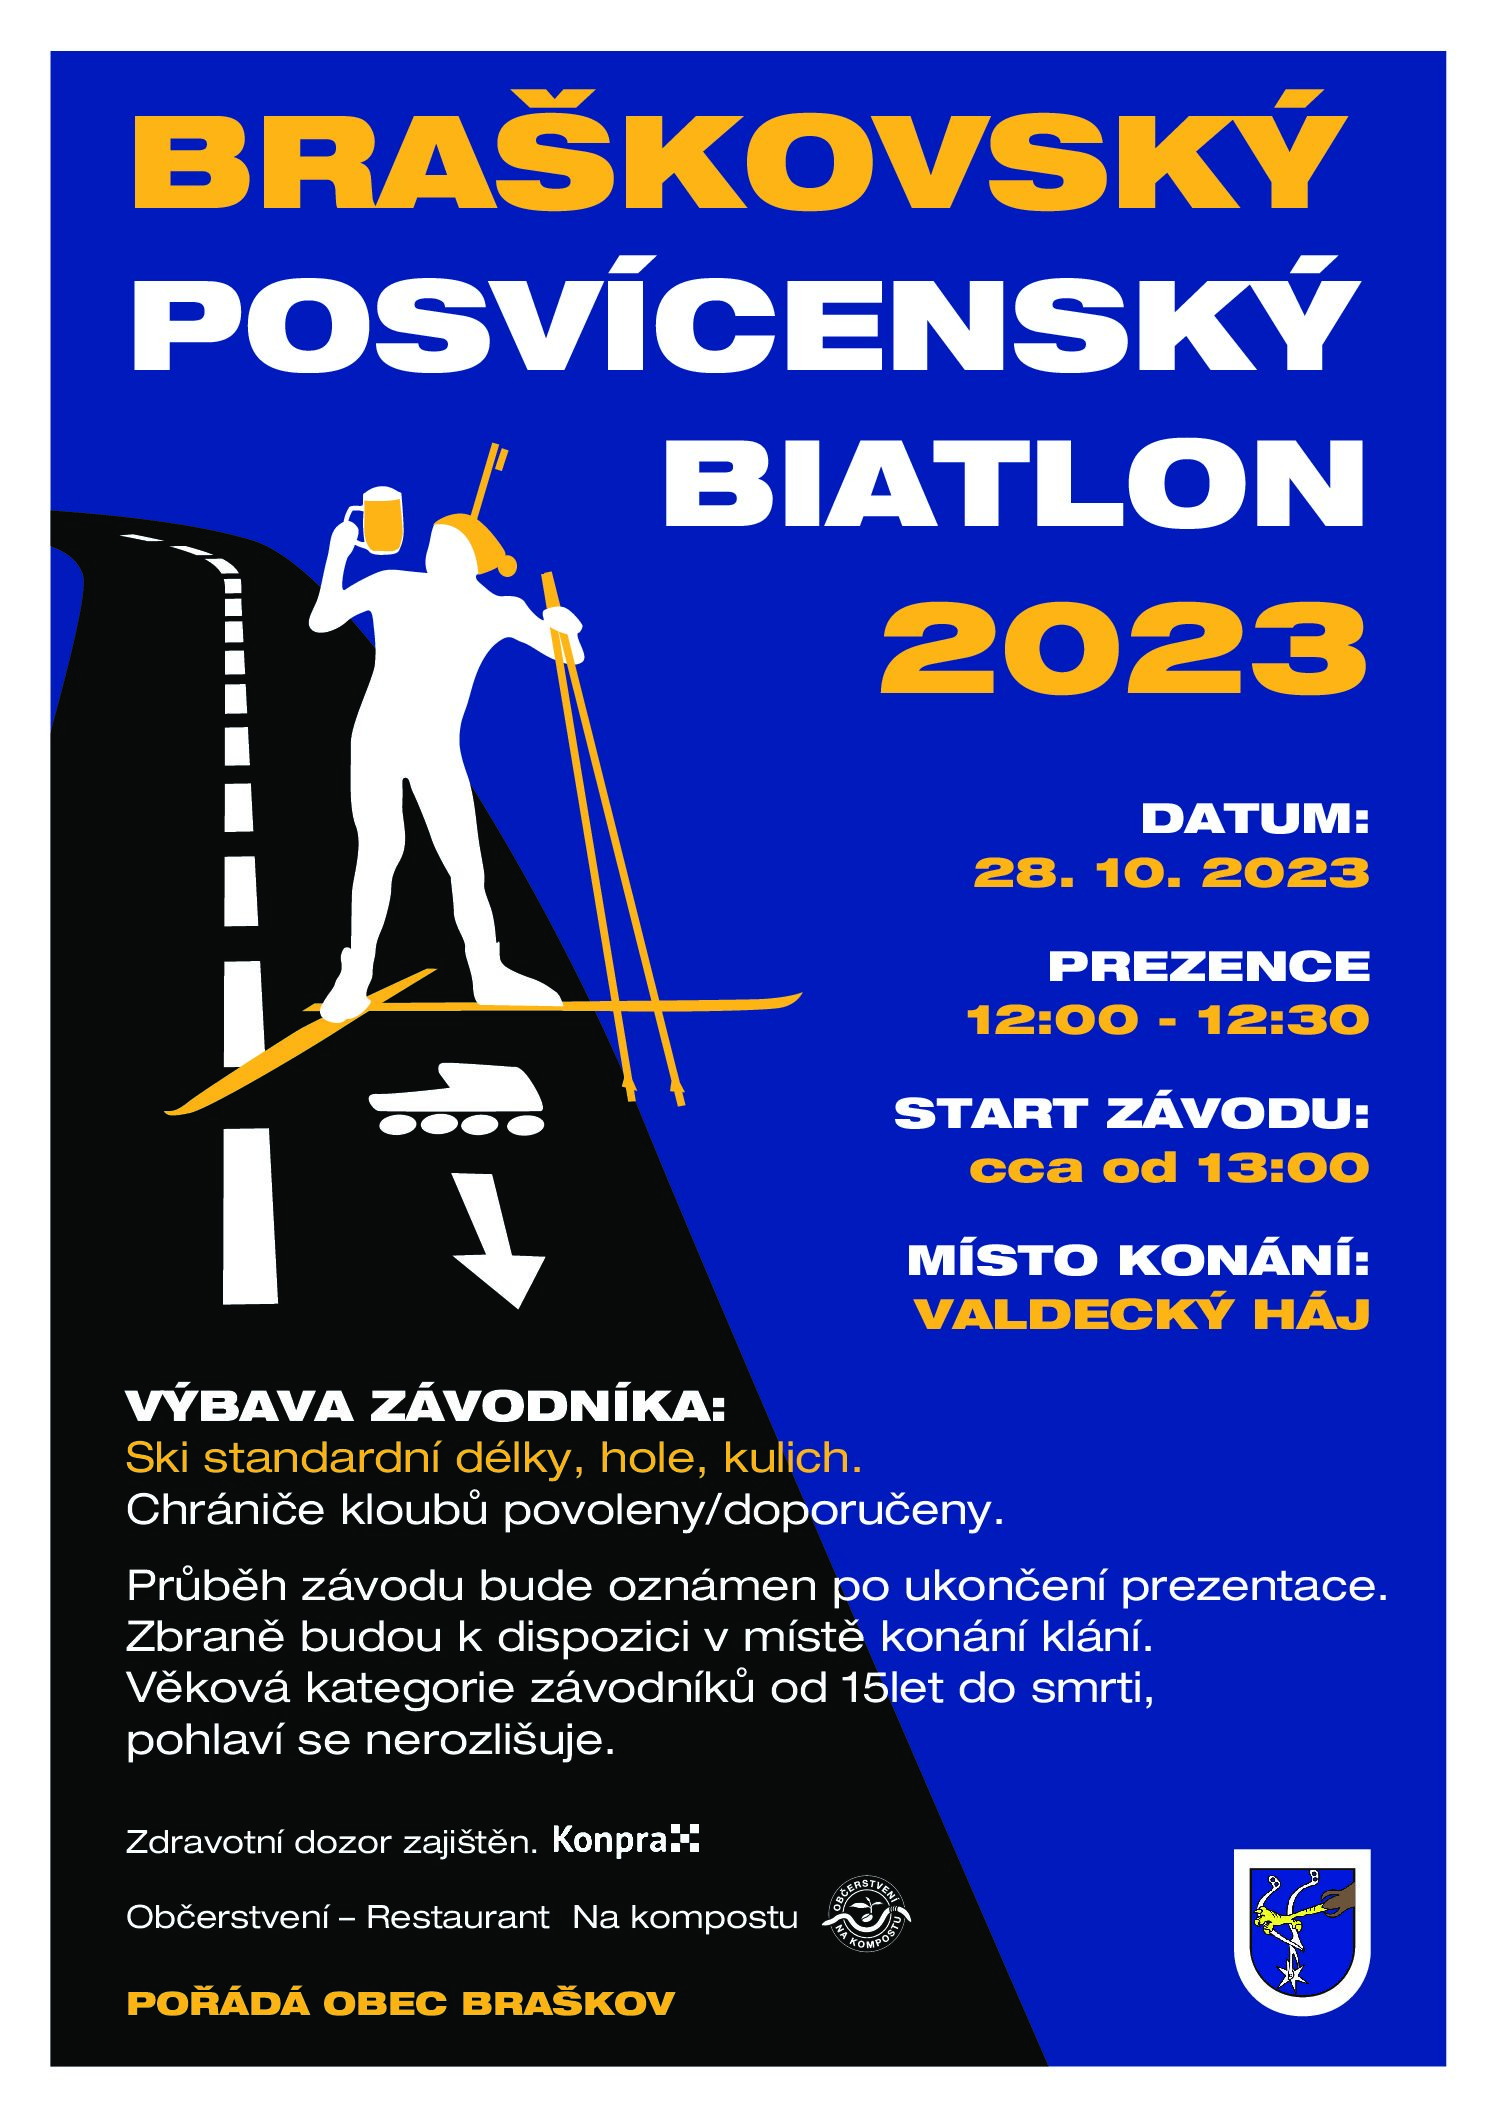 Braškovský Posvícenský Biatlon – 3. ročník v sobotu 28.10.2023